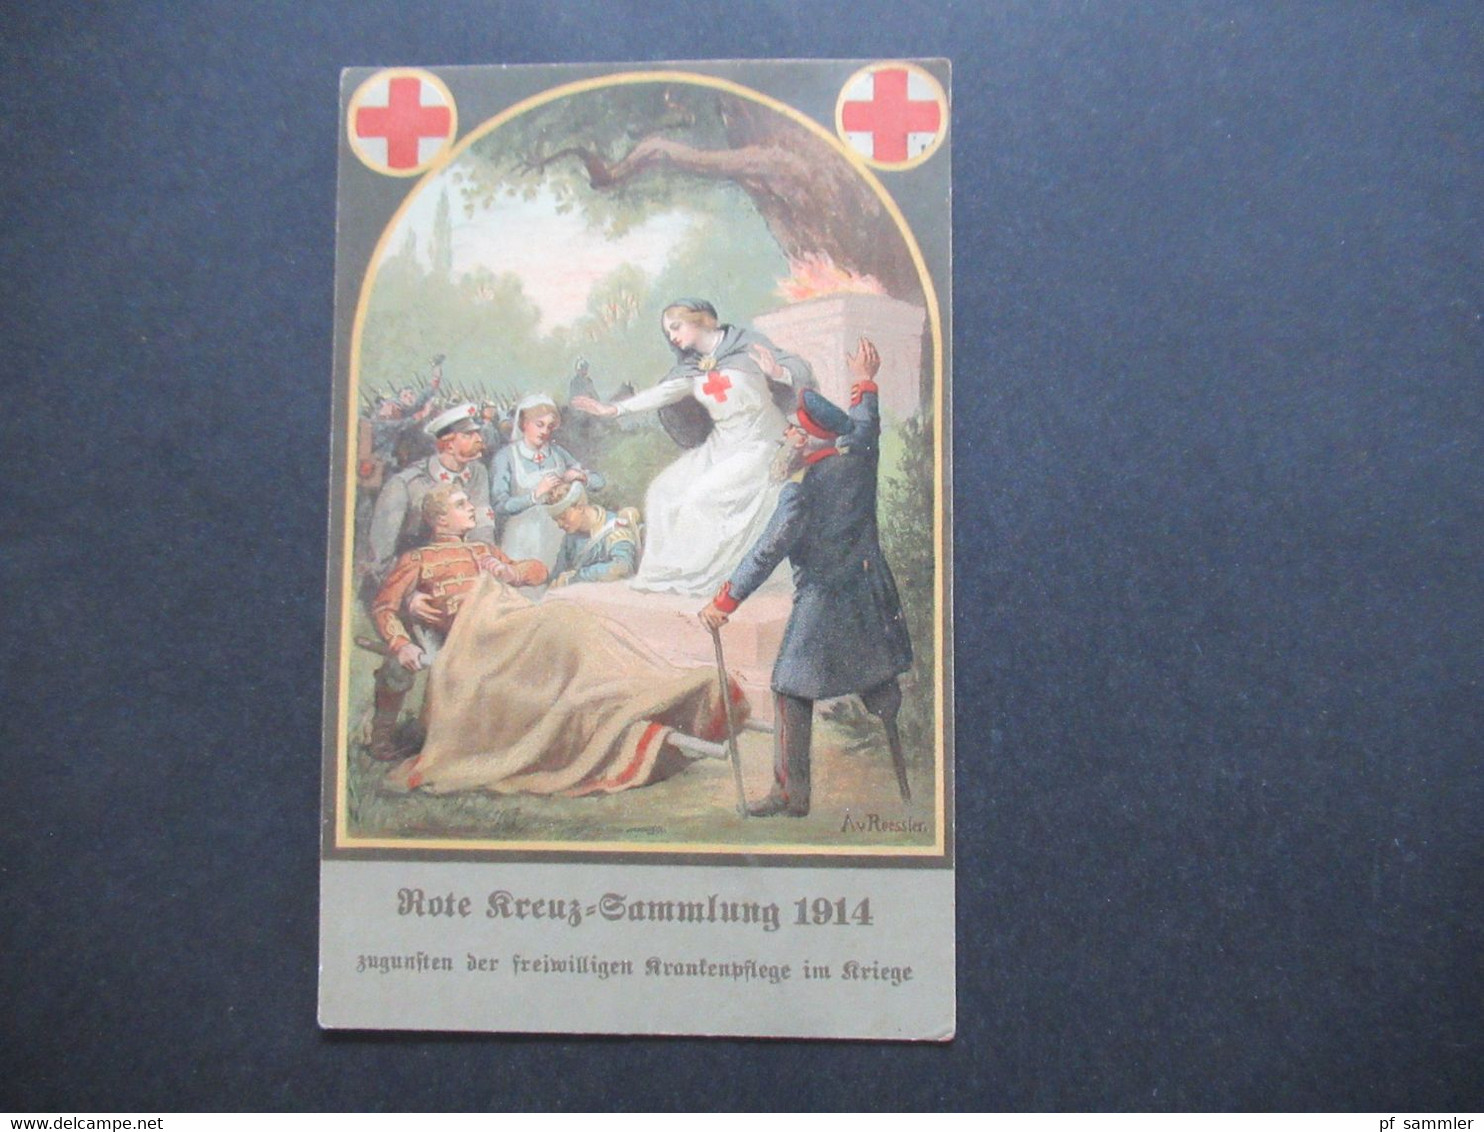 DR 1914 AK Rote Kreuz Sammlung 1914 Zugunsten Der Freiwilligen Krankenpflege Im Kriege Orts Postkarte Detmold - Rotes Kreuz